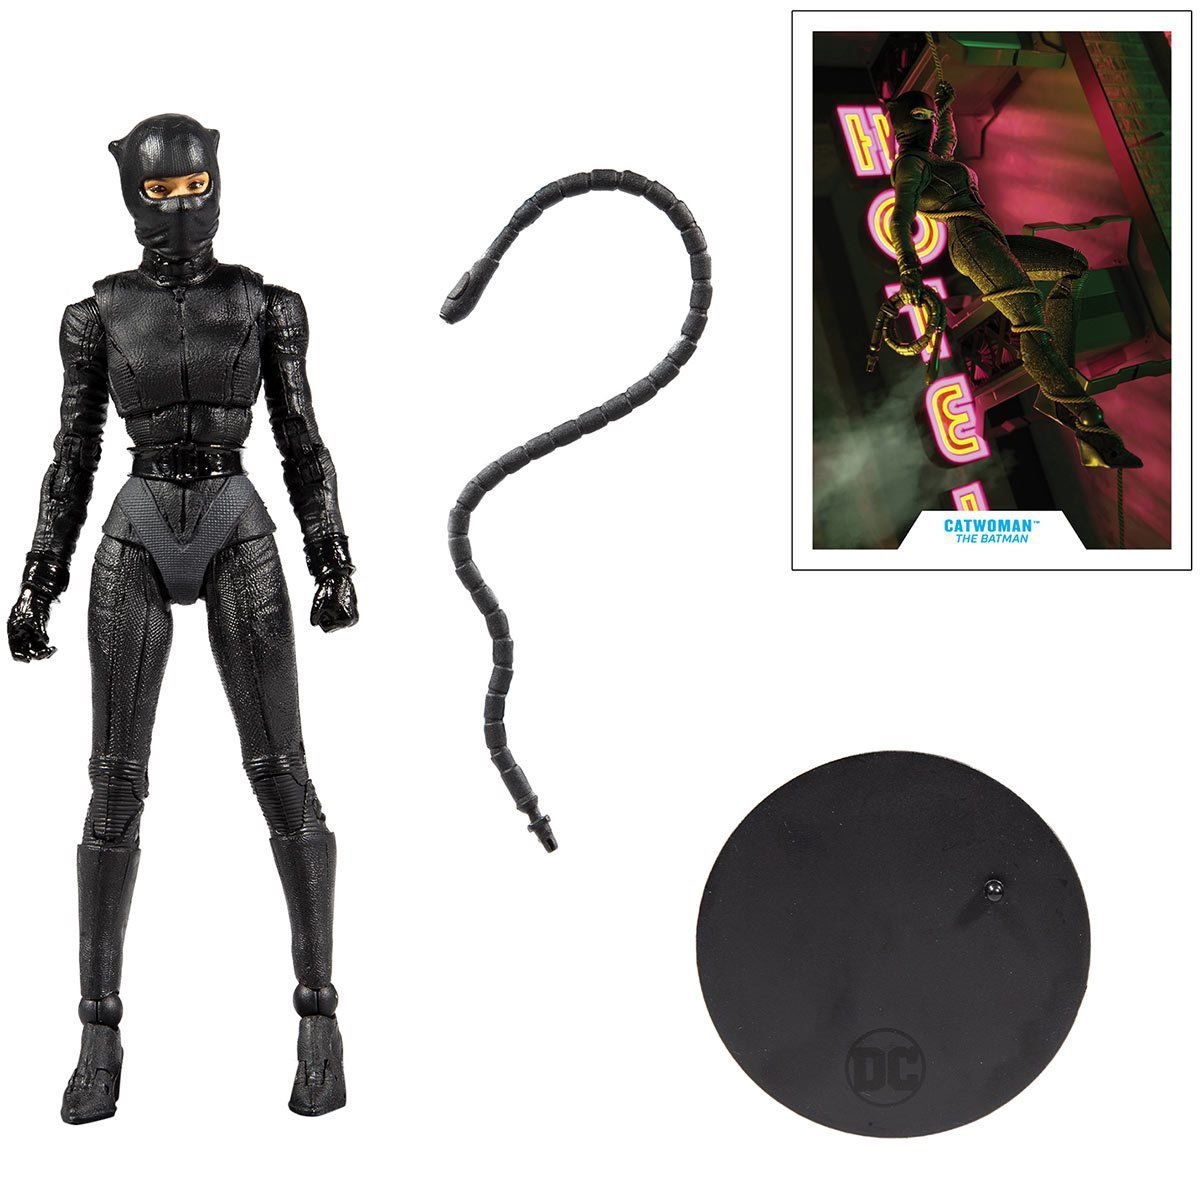 Catwoman The Batman Action Figure